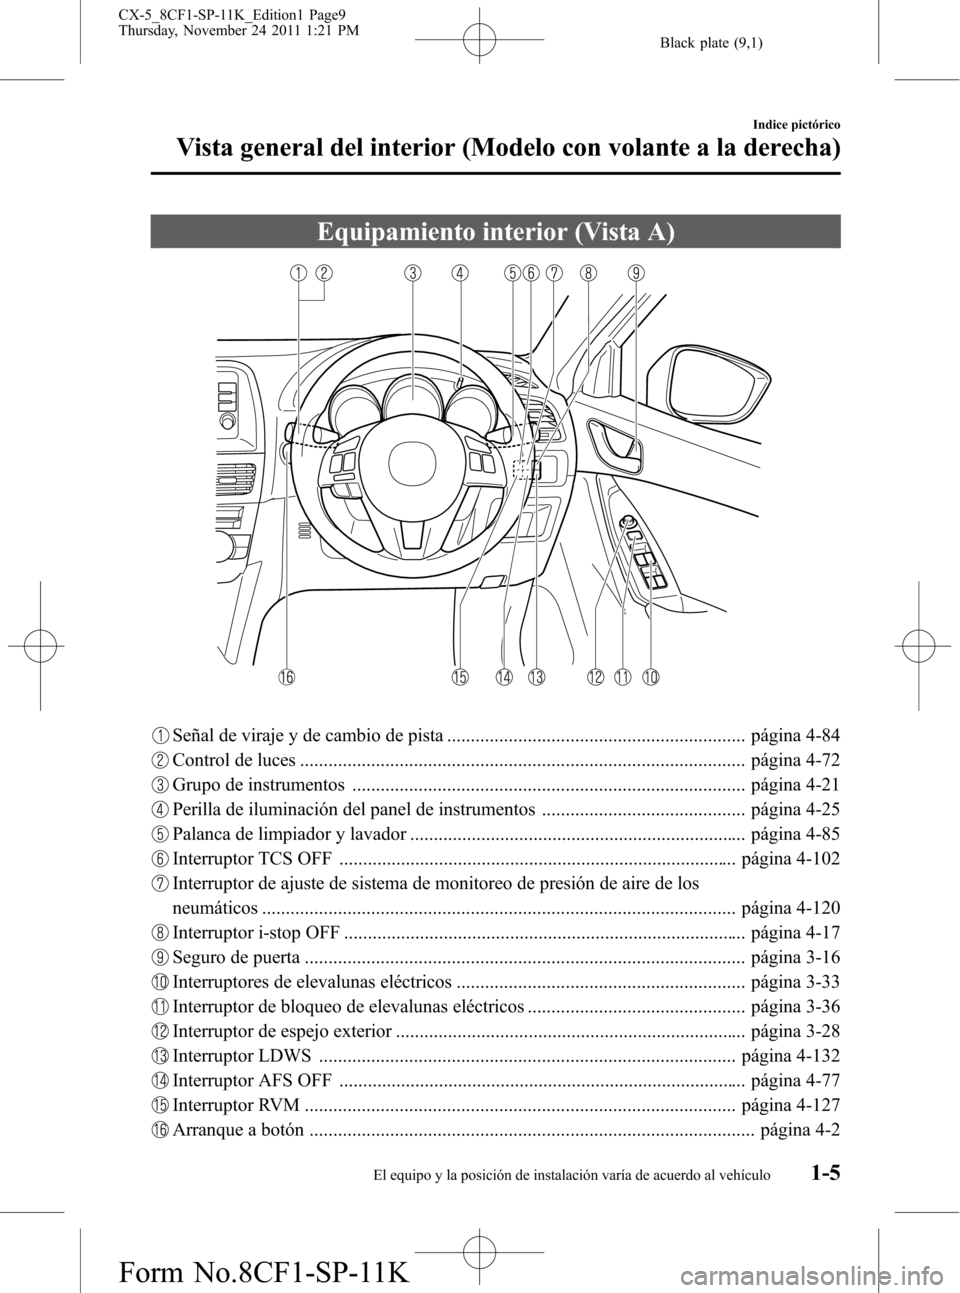 MAZDA MODEL CX-5 2012  Manual del propietario (in Spanish)  Black plate (9,1)
Equipamiento interior (Vista A)
Señal de viraje y de cambio de pista ............................................................... página 4-84
Control de luces ..................